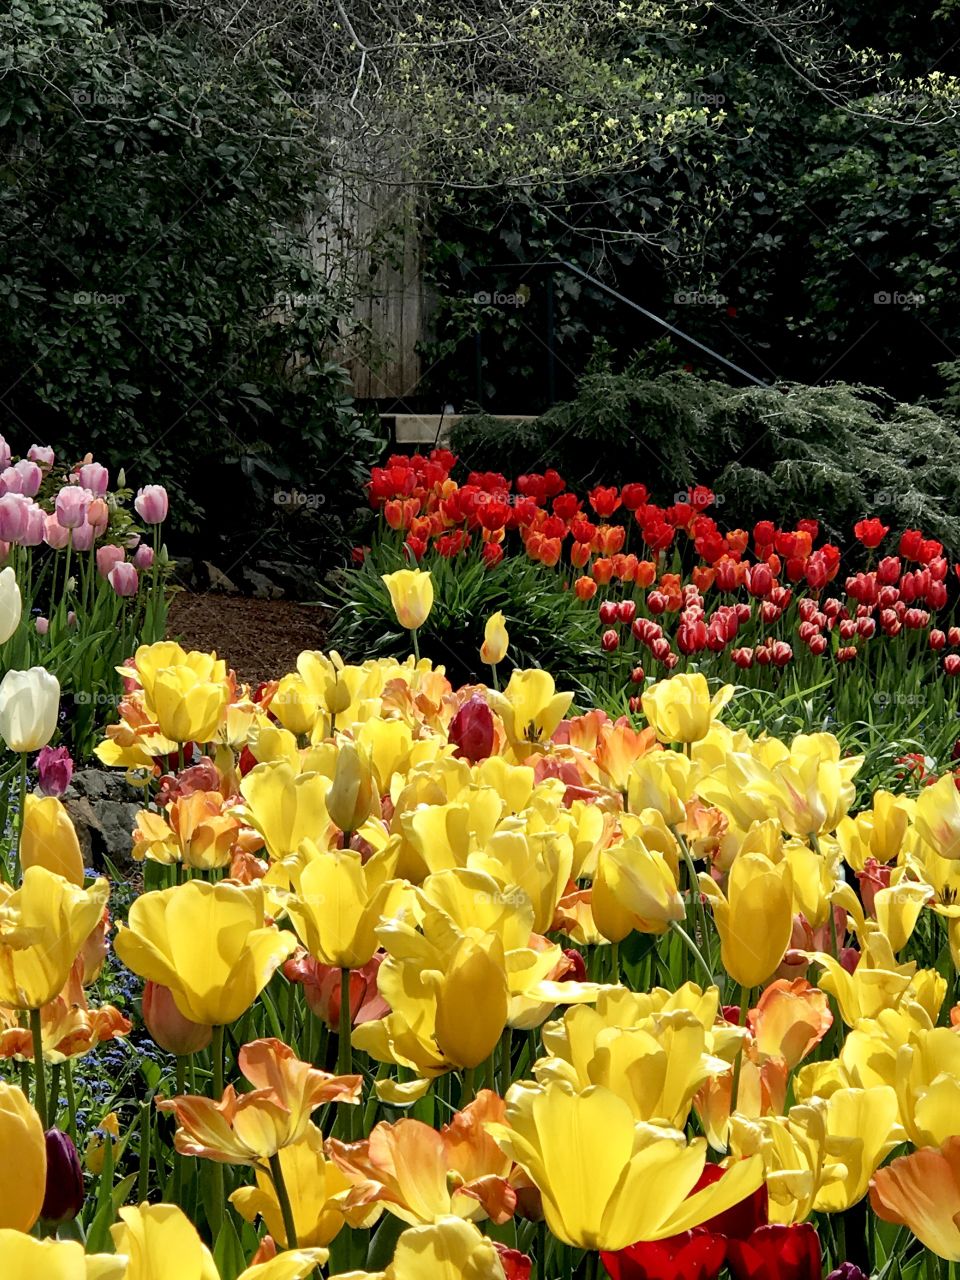 Cheery tulips 